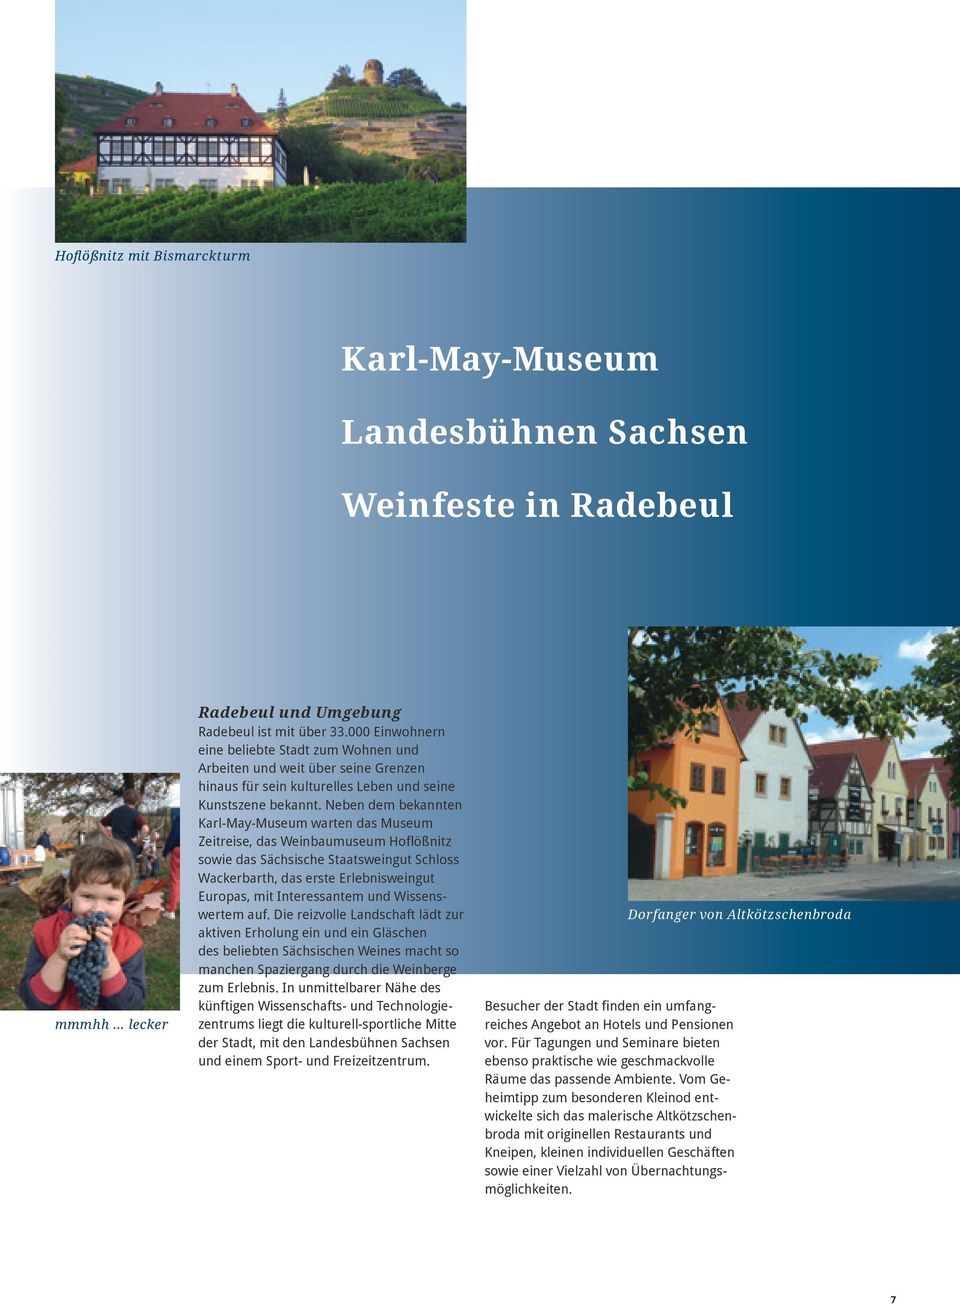 Neben dem bekannten Karl-May-Museum warten das Museum Zeitreise, das Weinbaumuseum Hoflößnitz sowie das Sächsische Staatsweingut Schloss Wackerbarth, das erste Erlebnisweingut Europas, mit